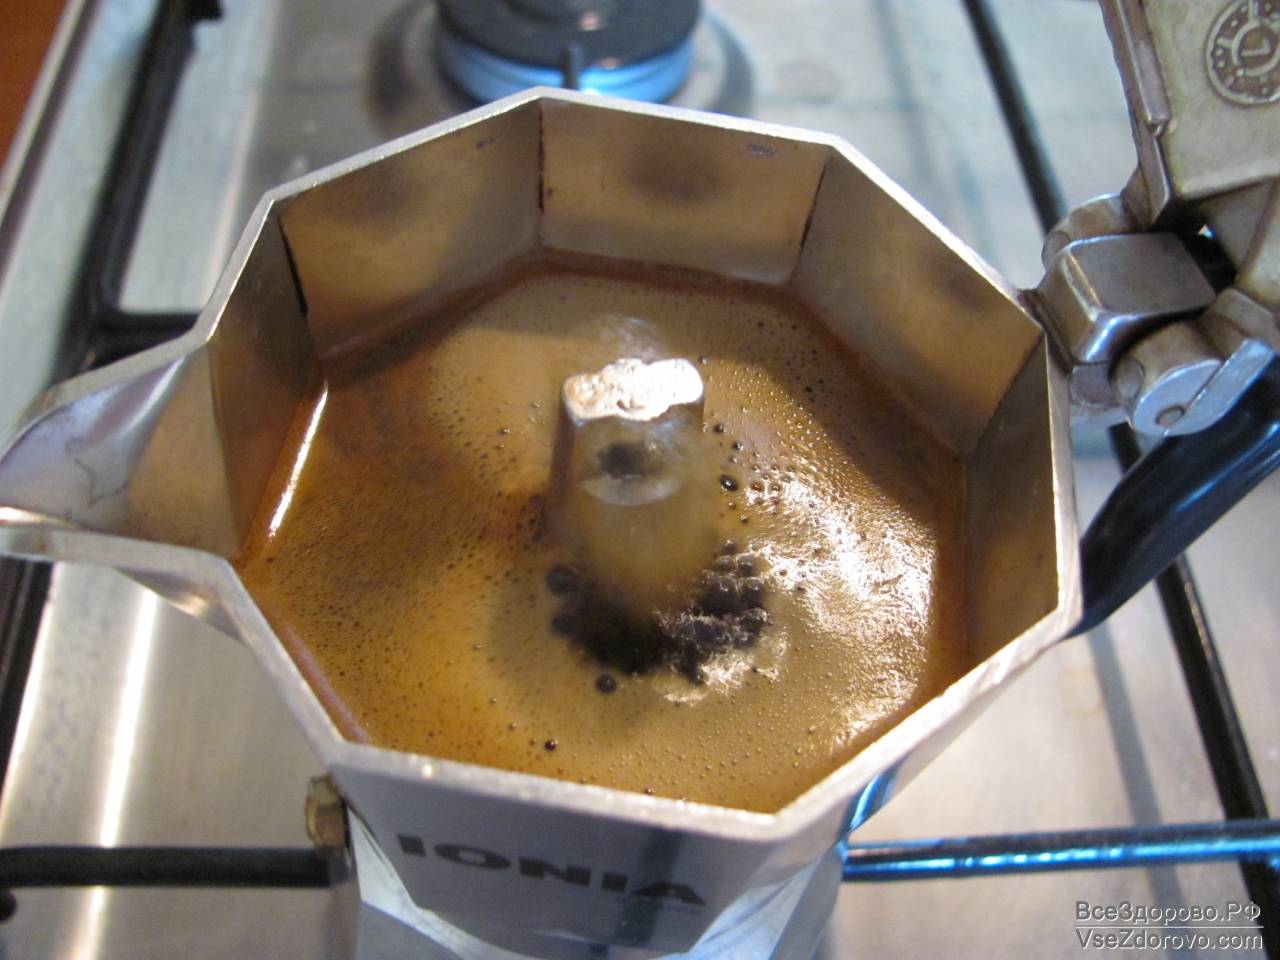 Гейзерная кофеварка как варить кофе на газу. Кофе в гейзерной кофеварке. Варка кофе в гейзерной кофеварке. Гейзерная заварка. Кофе из гейзерной кофеварки.